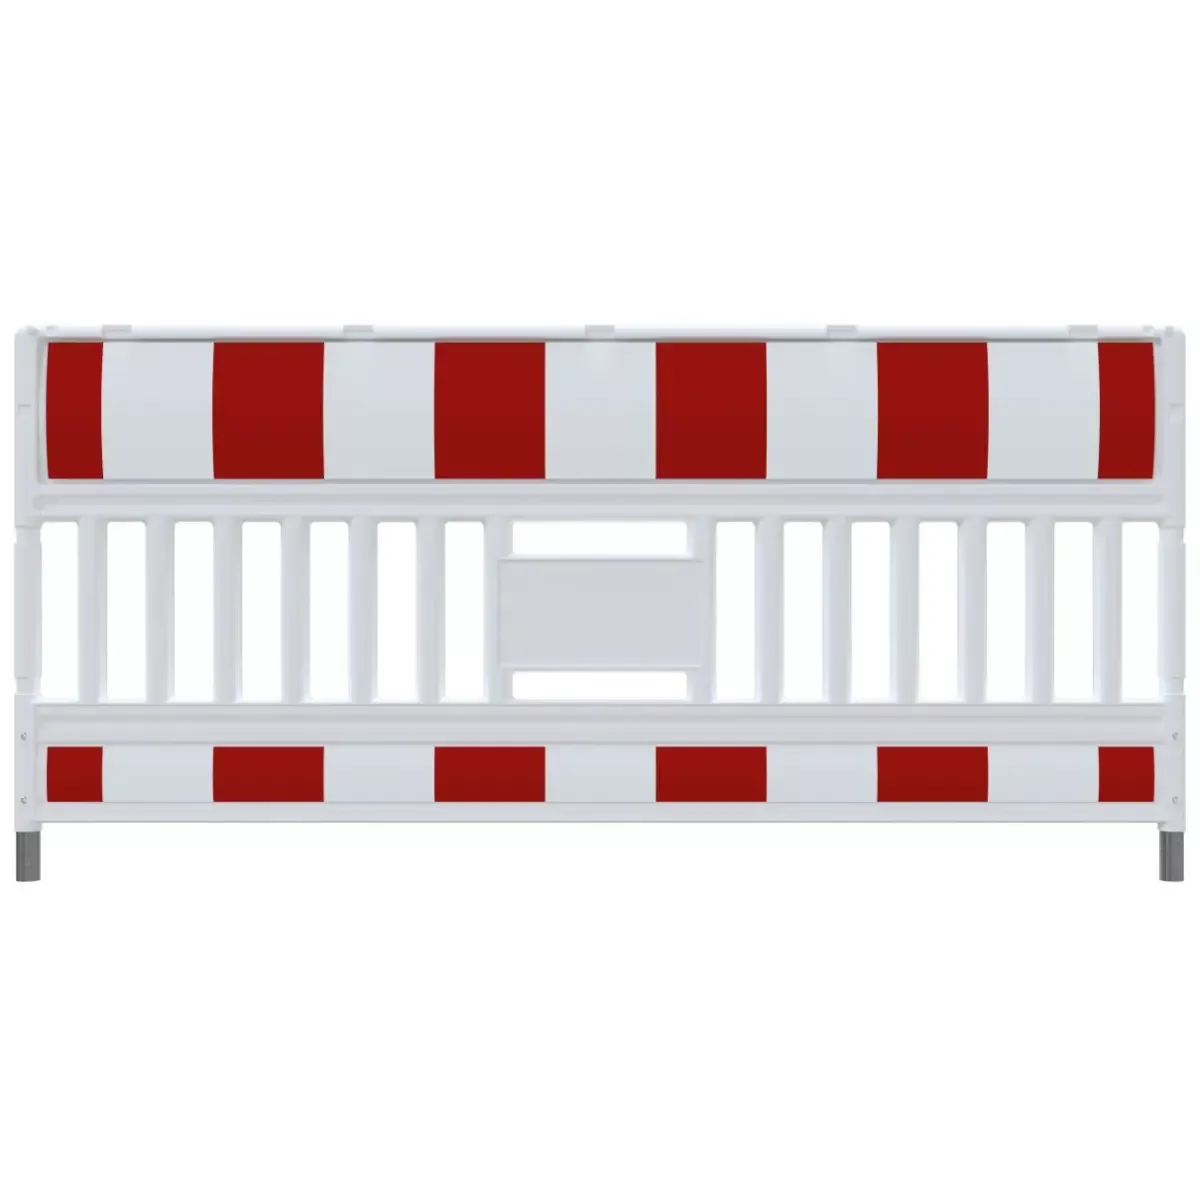 EURO3 Absperrschrankengitter RA1, rot-weiß, vorgerichtet für auswechselbare Adapter Bild 4 von 6 für Baustellenabsicherung